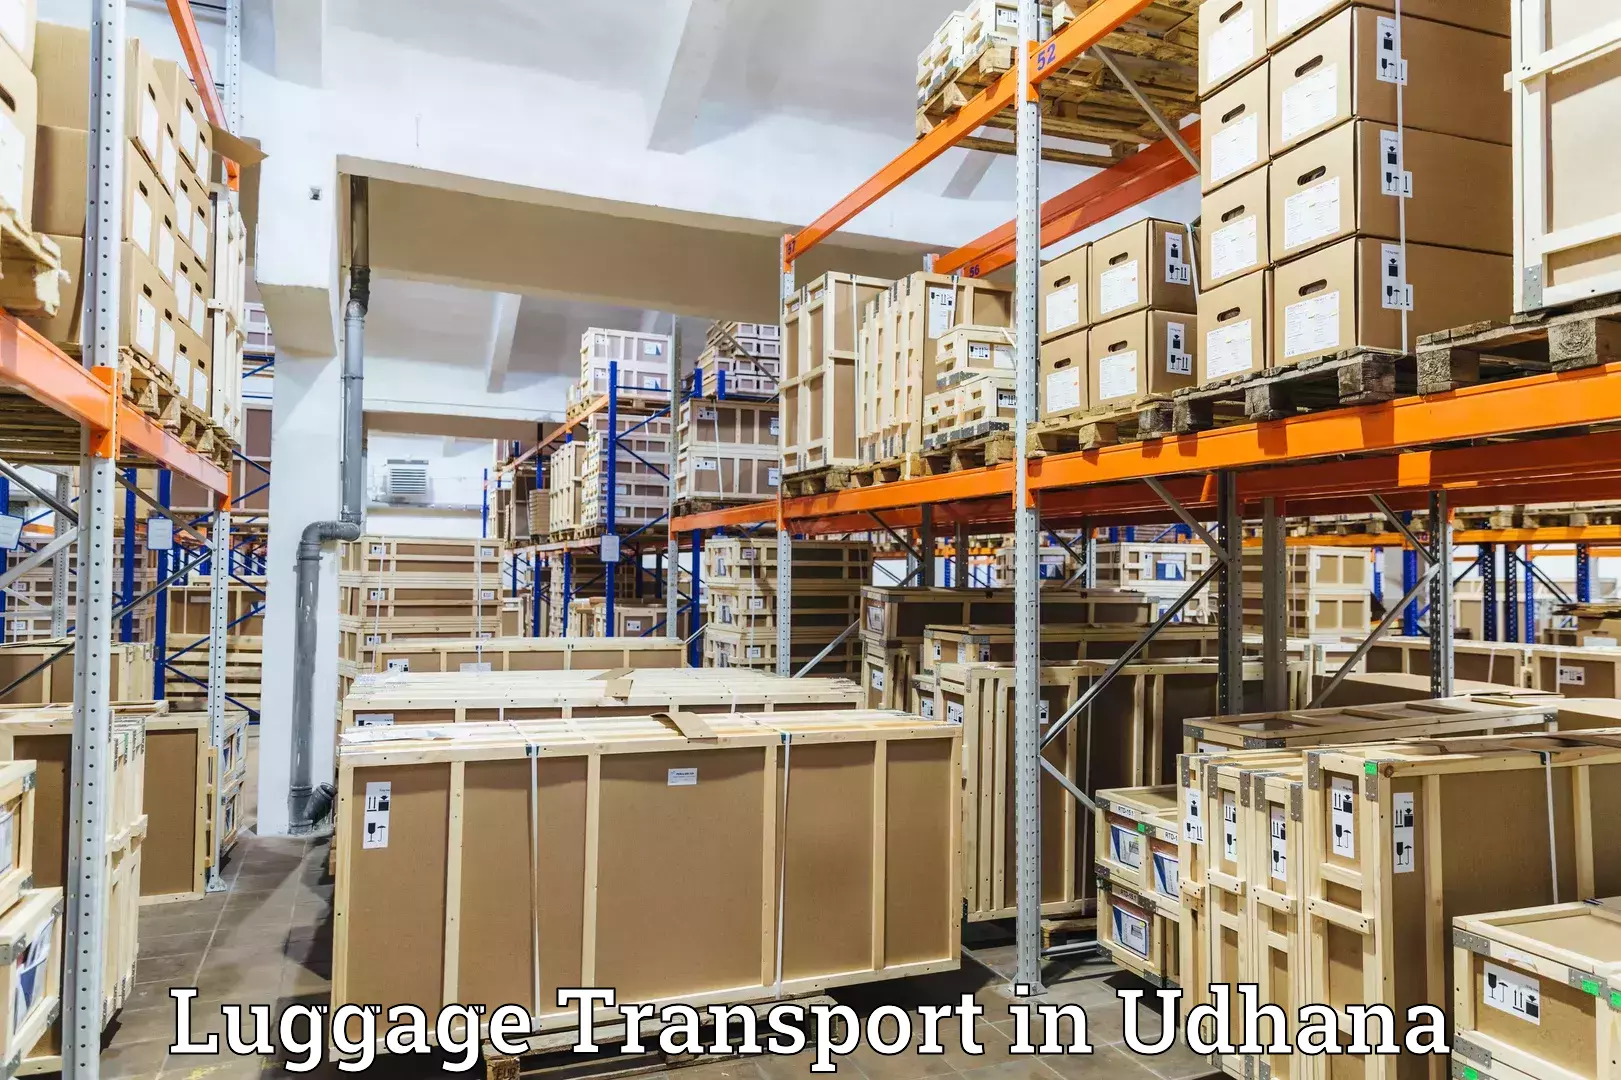 Luggage shipment tracking in Udhana